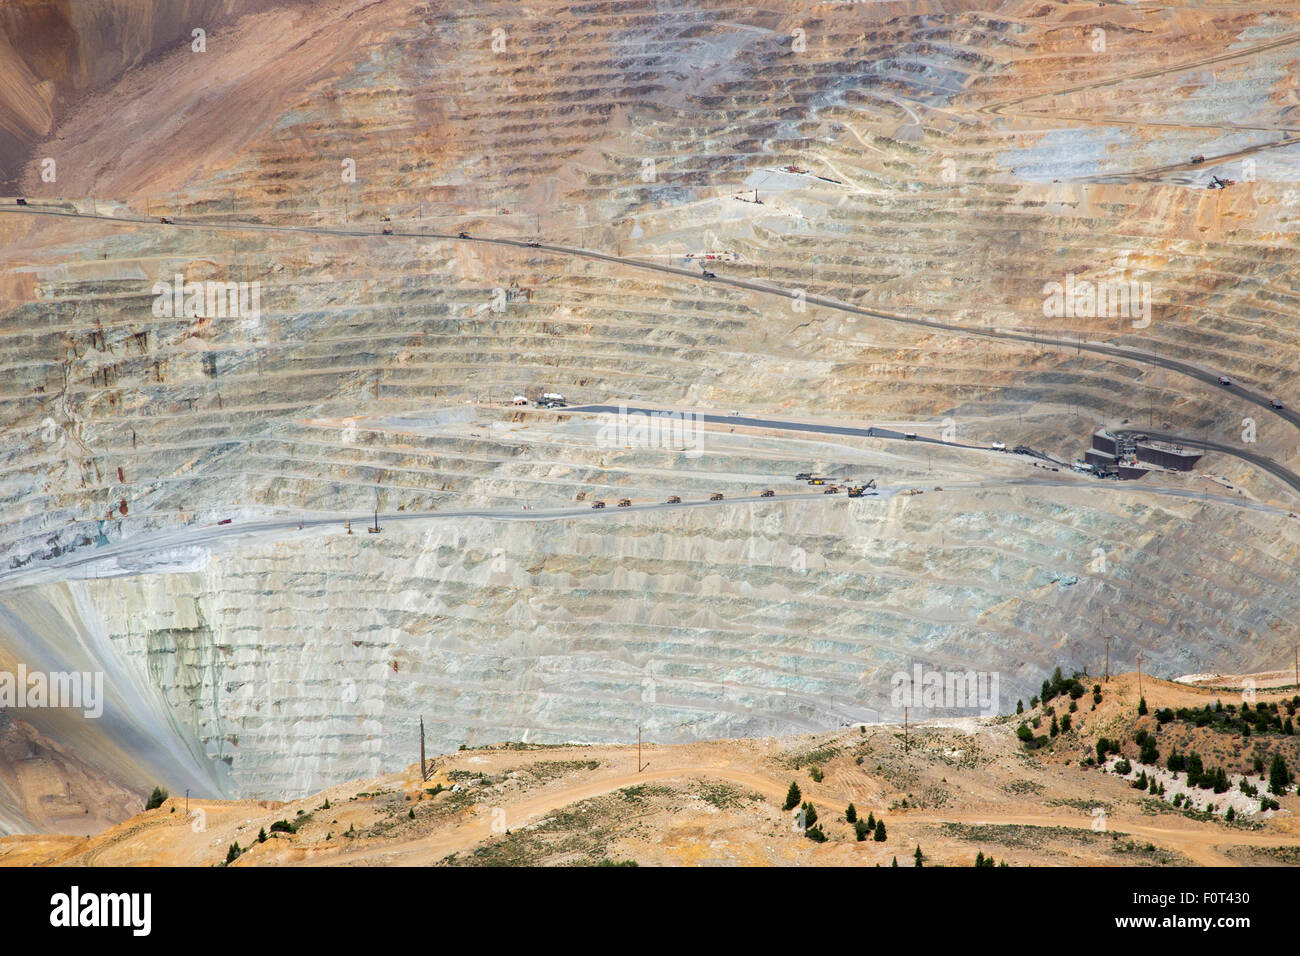 Salt Lake City, Utah - Utah Kennecott del rame Bingham Canyon miniera di rame. Foto Stock